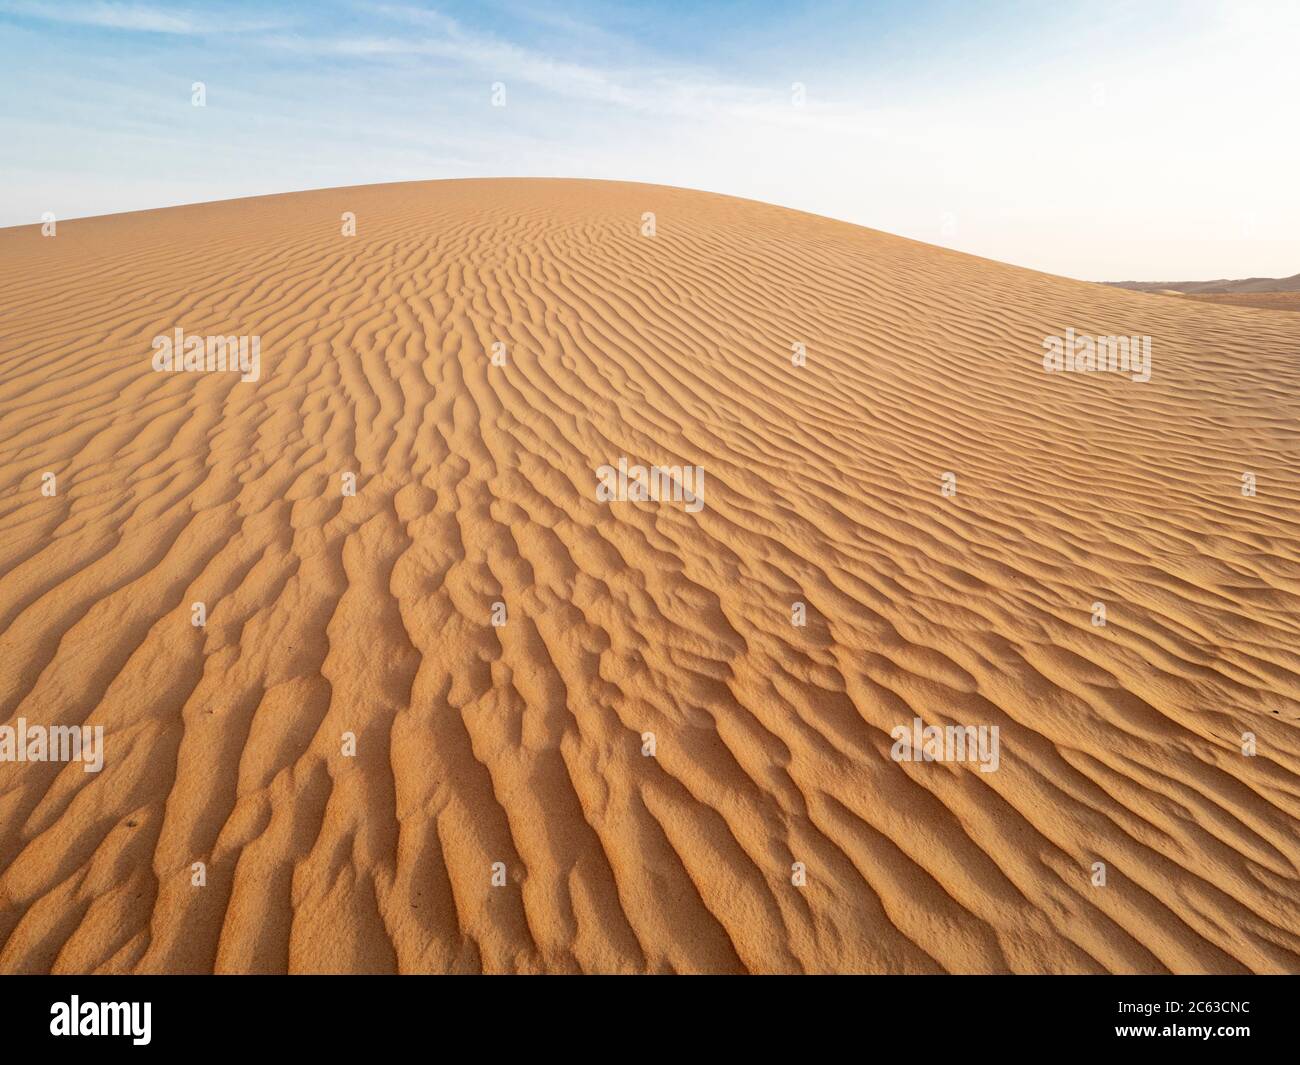 Dunes de sable dans le désert de Ramlat Al Wahiba, connu localement sous le nom de quartier vide, Sultanat d'Oman. Banque D'Images